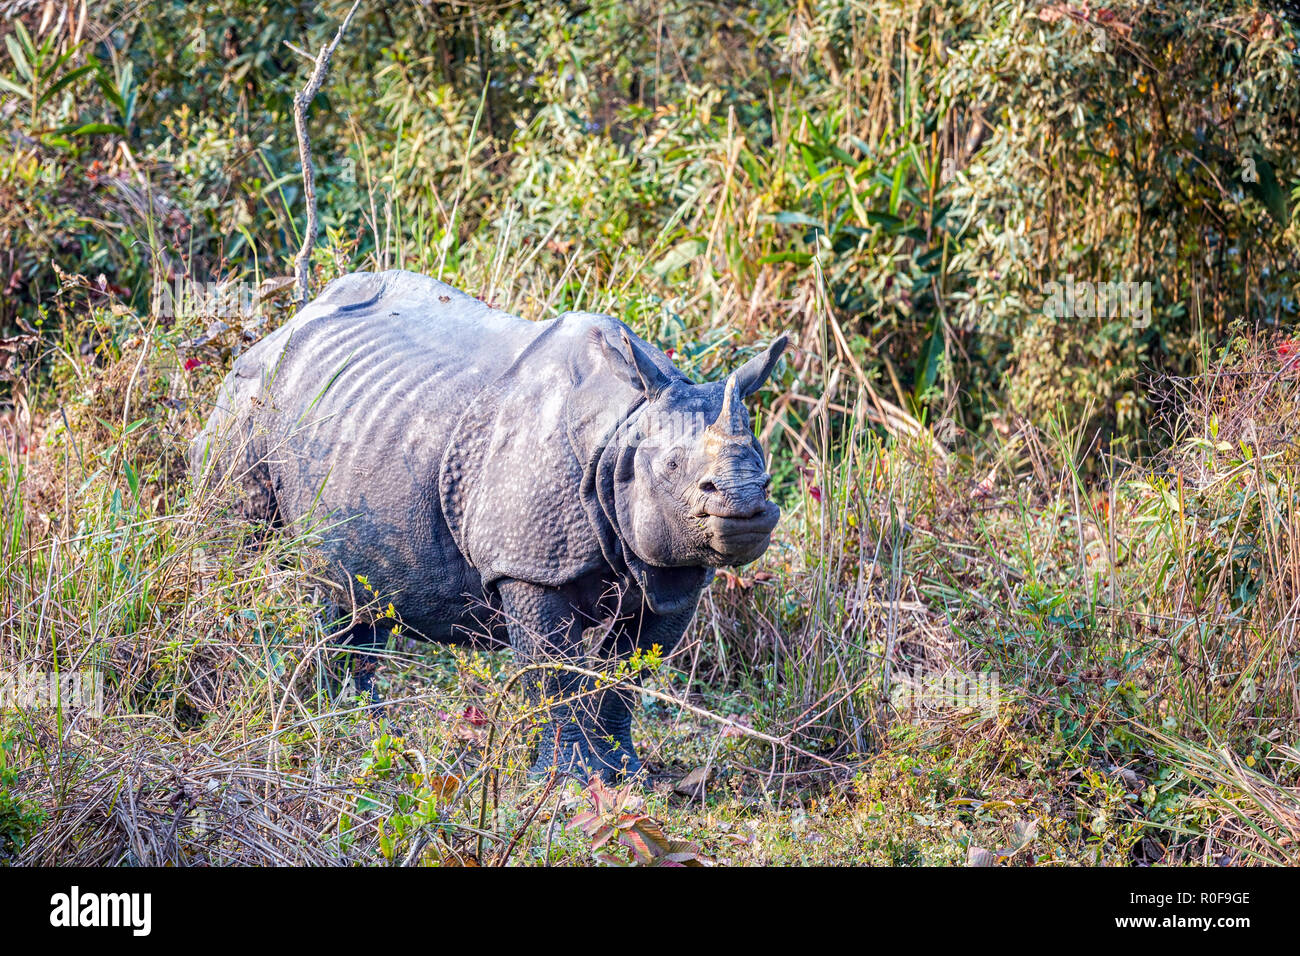 Le rhinocéros indien (Rhinoceros unicornis) dans le parc national de Kaziranga, Assam, Inde Banque D'Images